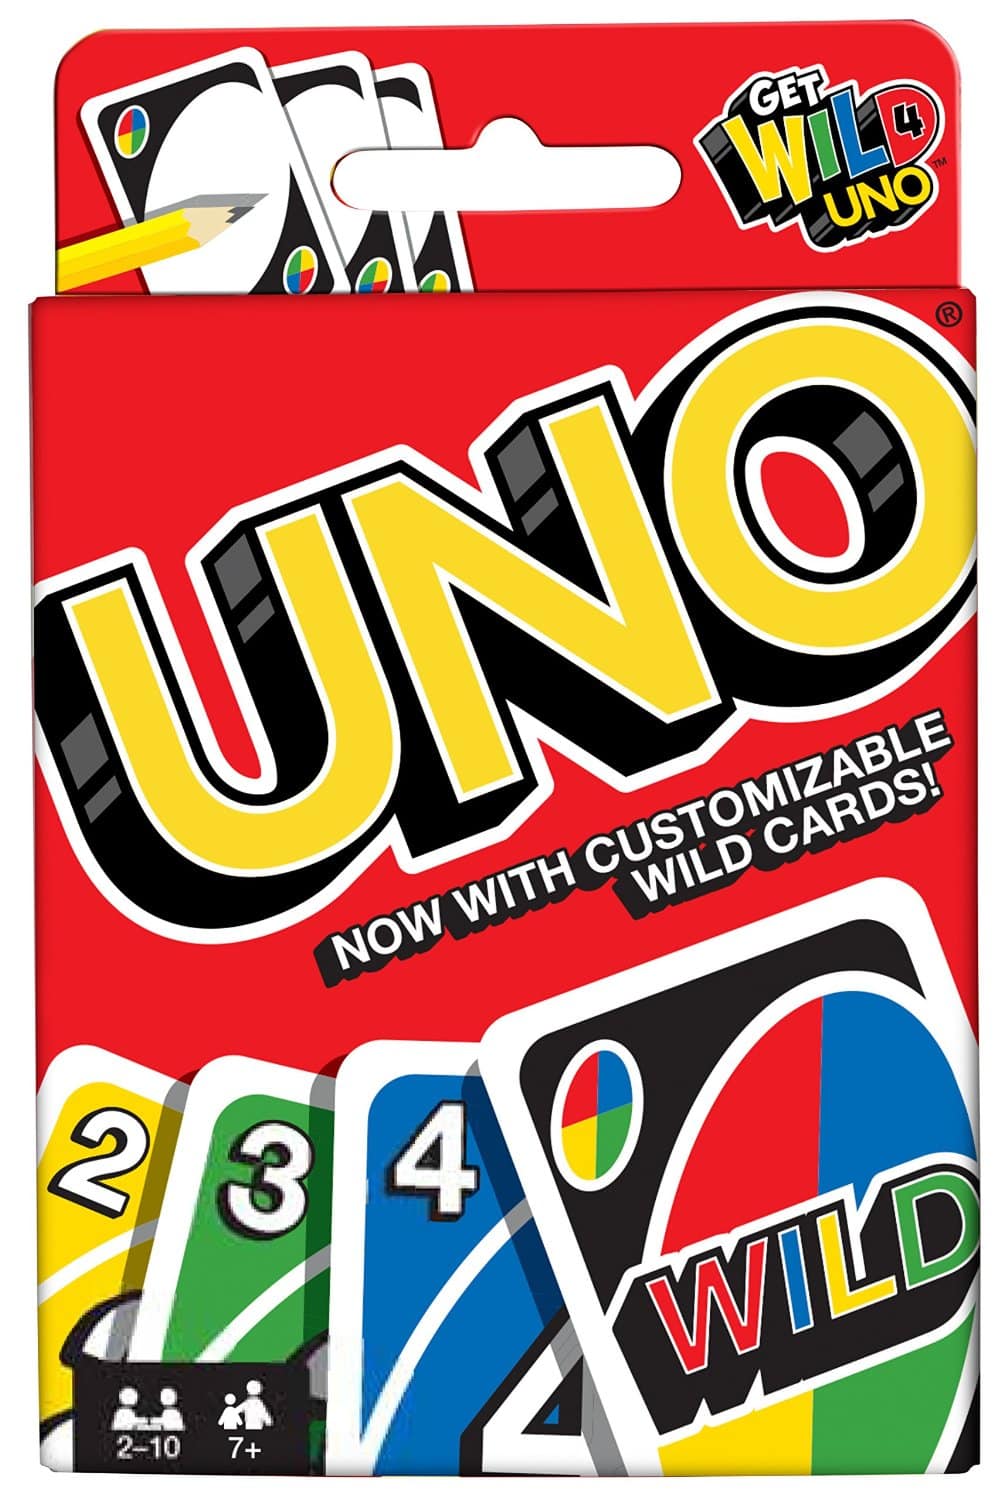 LIGHTNING DEAL ALERT! Uno Card Game – 74% off = $3.17